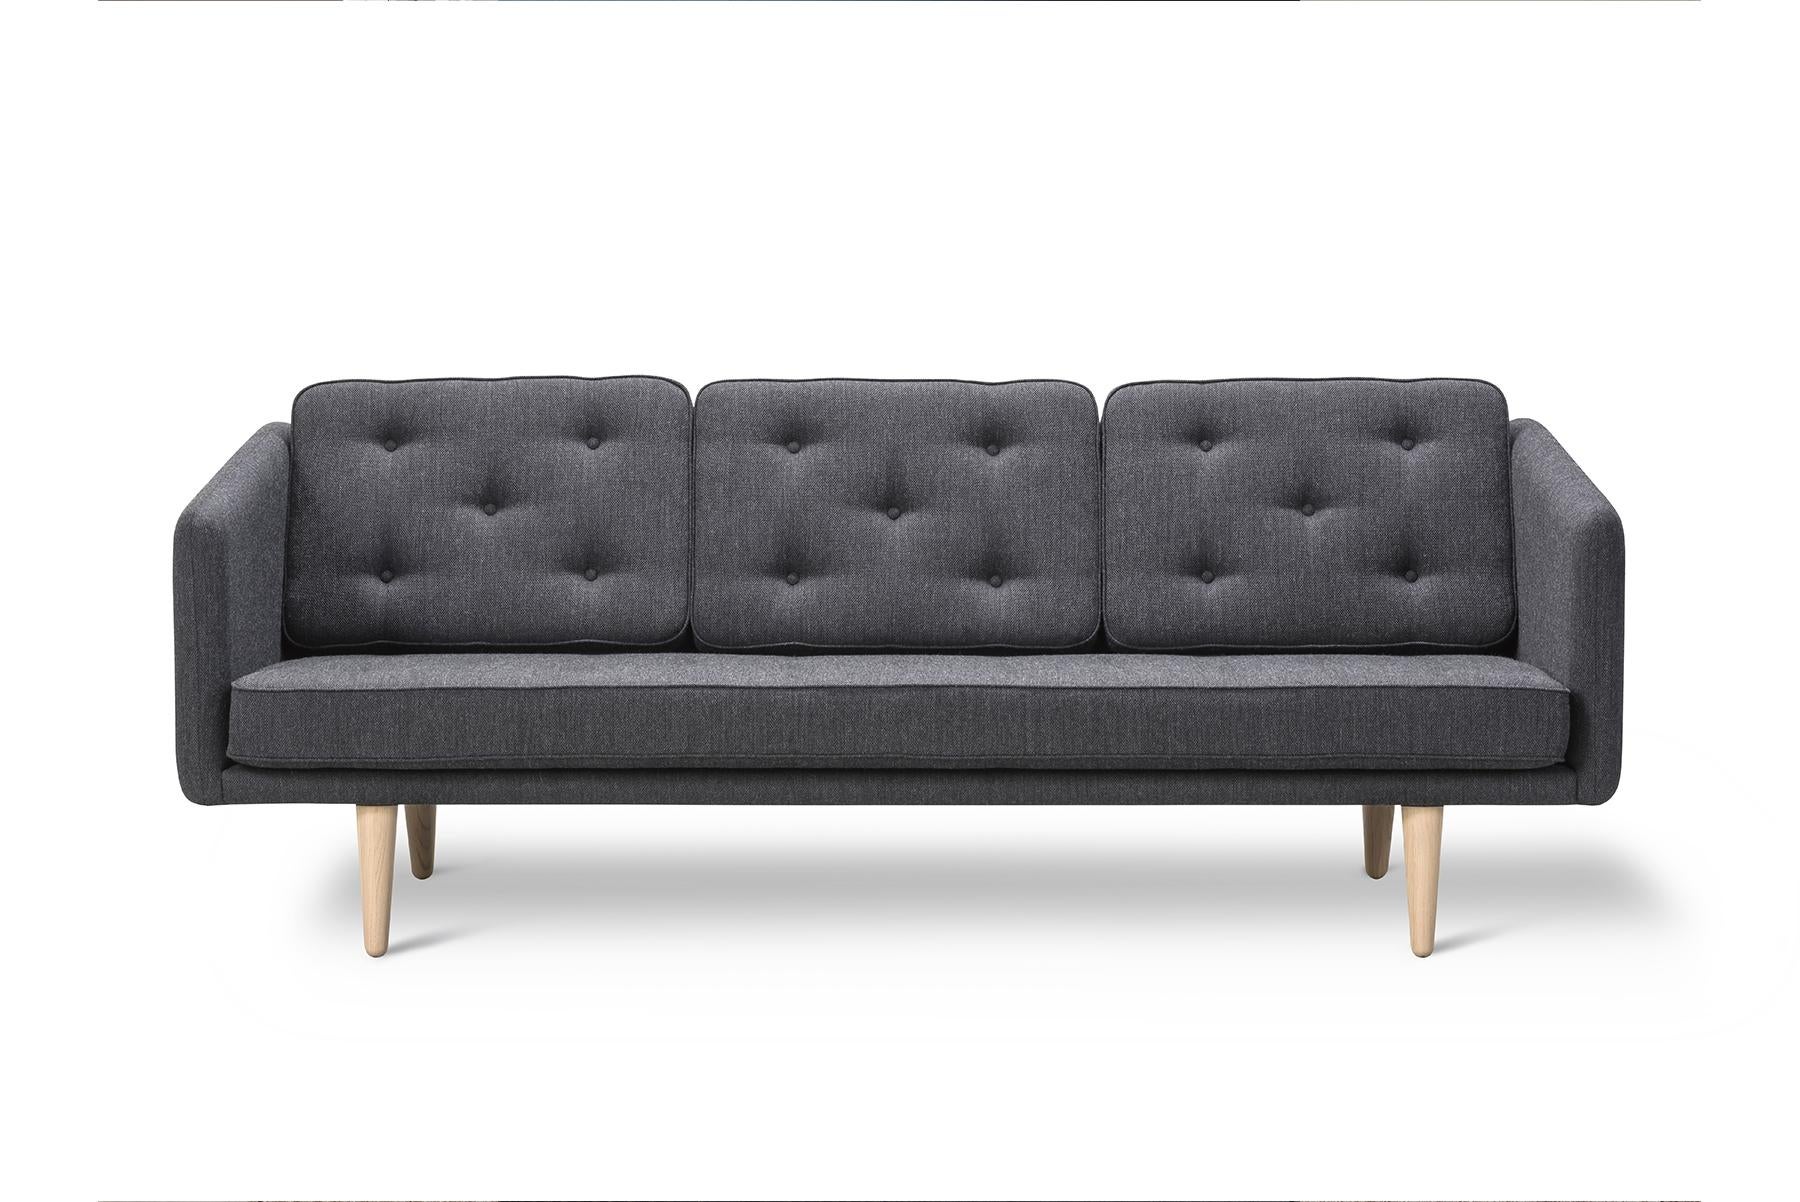 Mogensen a conçu le canapé 3 places Børge Mogensen de la série No.1 en 1955. Il a uni une forme nettement définie à un caractère plus doux et plus intime qui fonctionne bien comme point focal de la pièce.